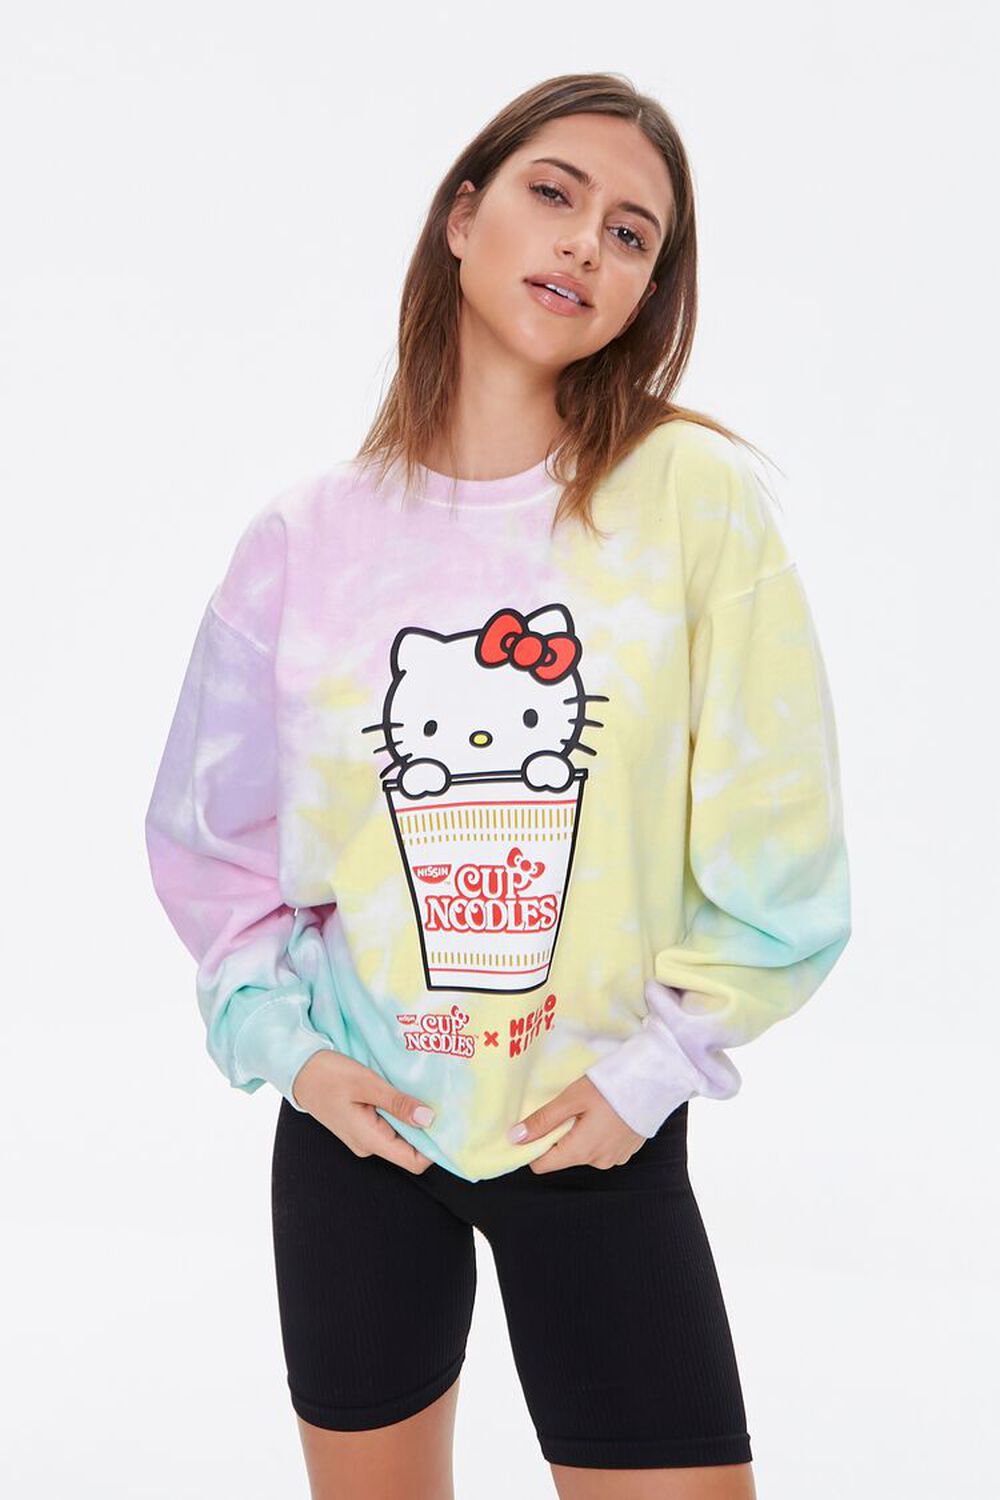 Nissin Cup Noodles X Hello Kitty Tie-Dye Girls Sweatshirt